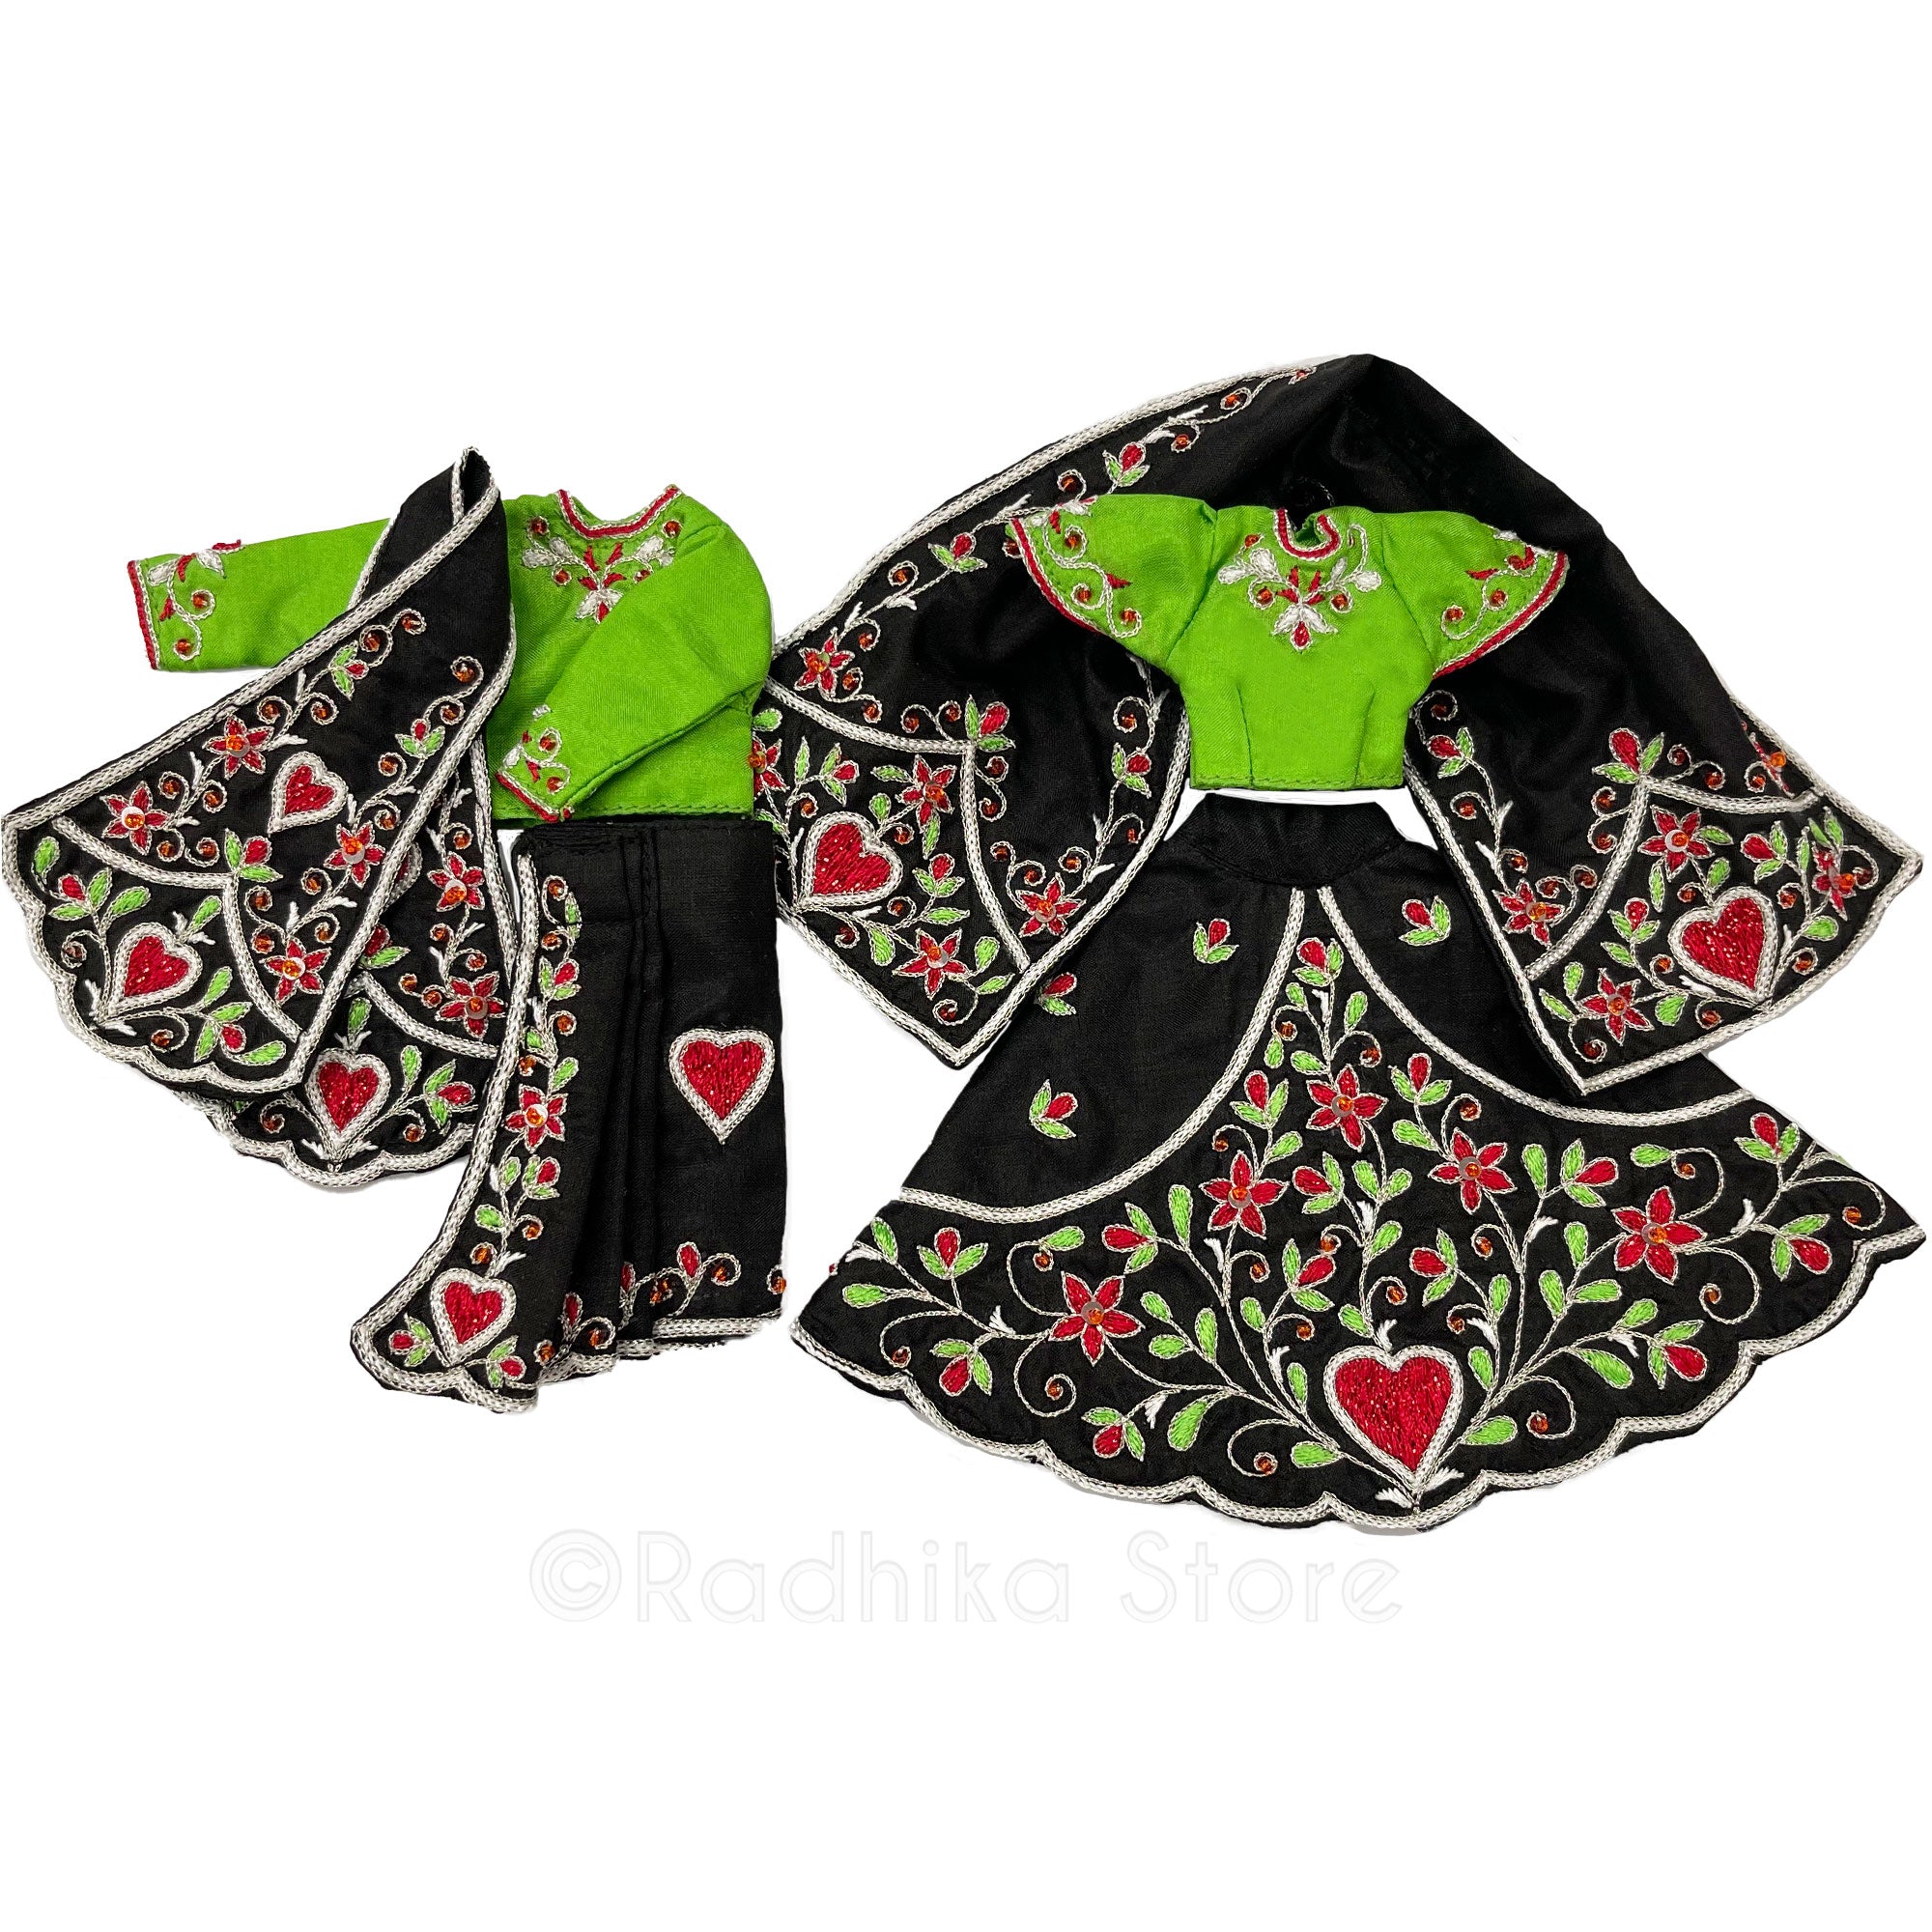 Bhakti Lata Bija - All Silk - Black with Green Choli and Kurta - Radha Krishna Deity Outfit